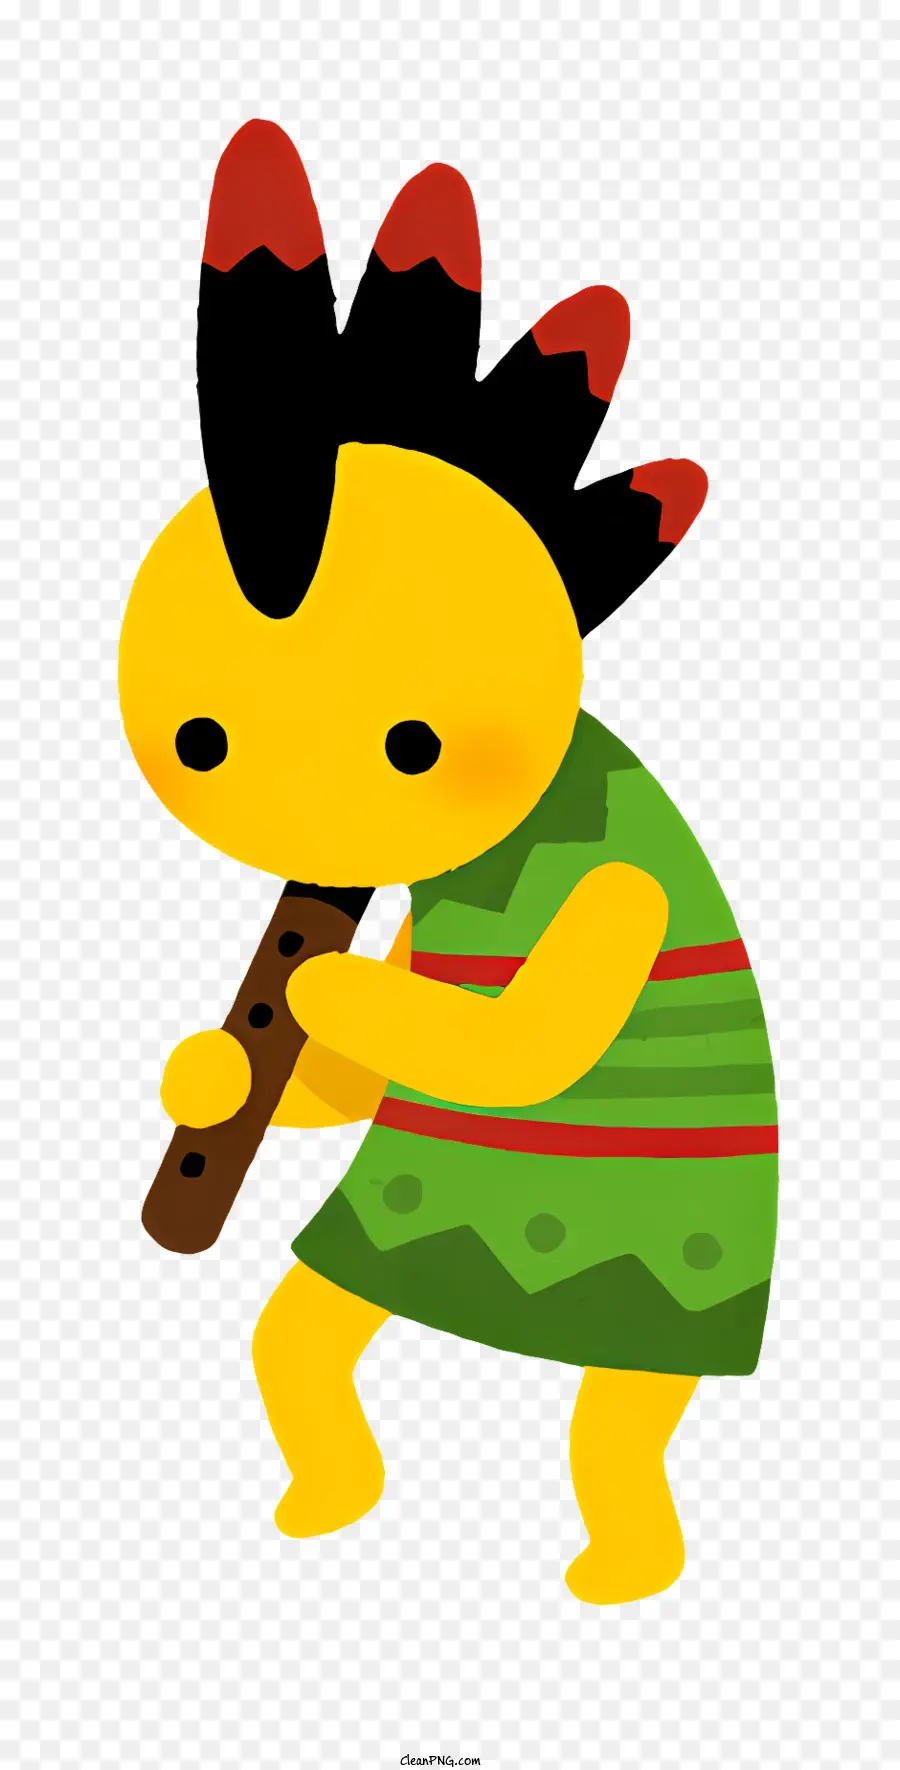 Fantasy -Figur Cartoon Charakter Rot und grüne Kleid Musikinstrument Stäbchen - Cartoonfigur spielt Instrument mit zwei Stöcken